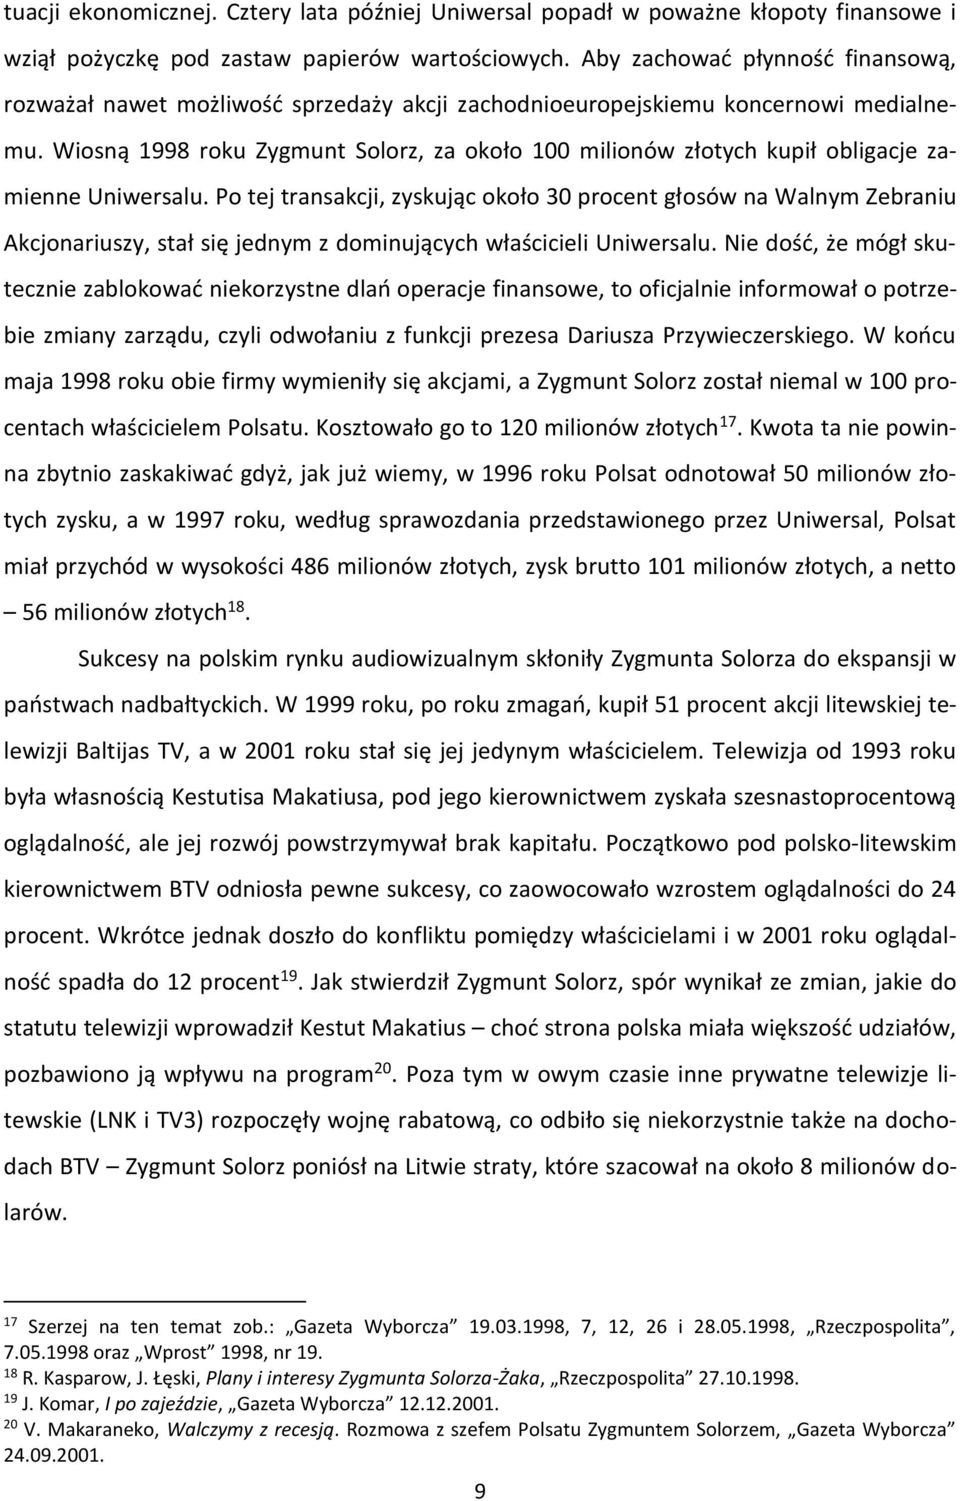 Wiosną 1998 roku Zygmunt Solorz, za około 100 milionów złotych kupił obligacje zamienne Uniwersalu.